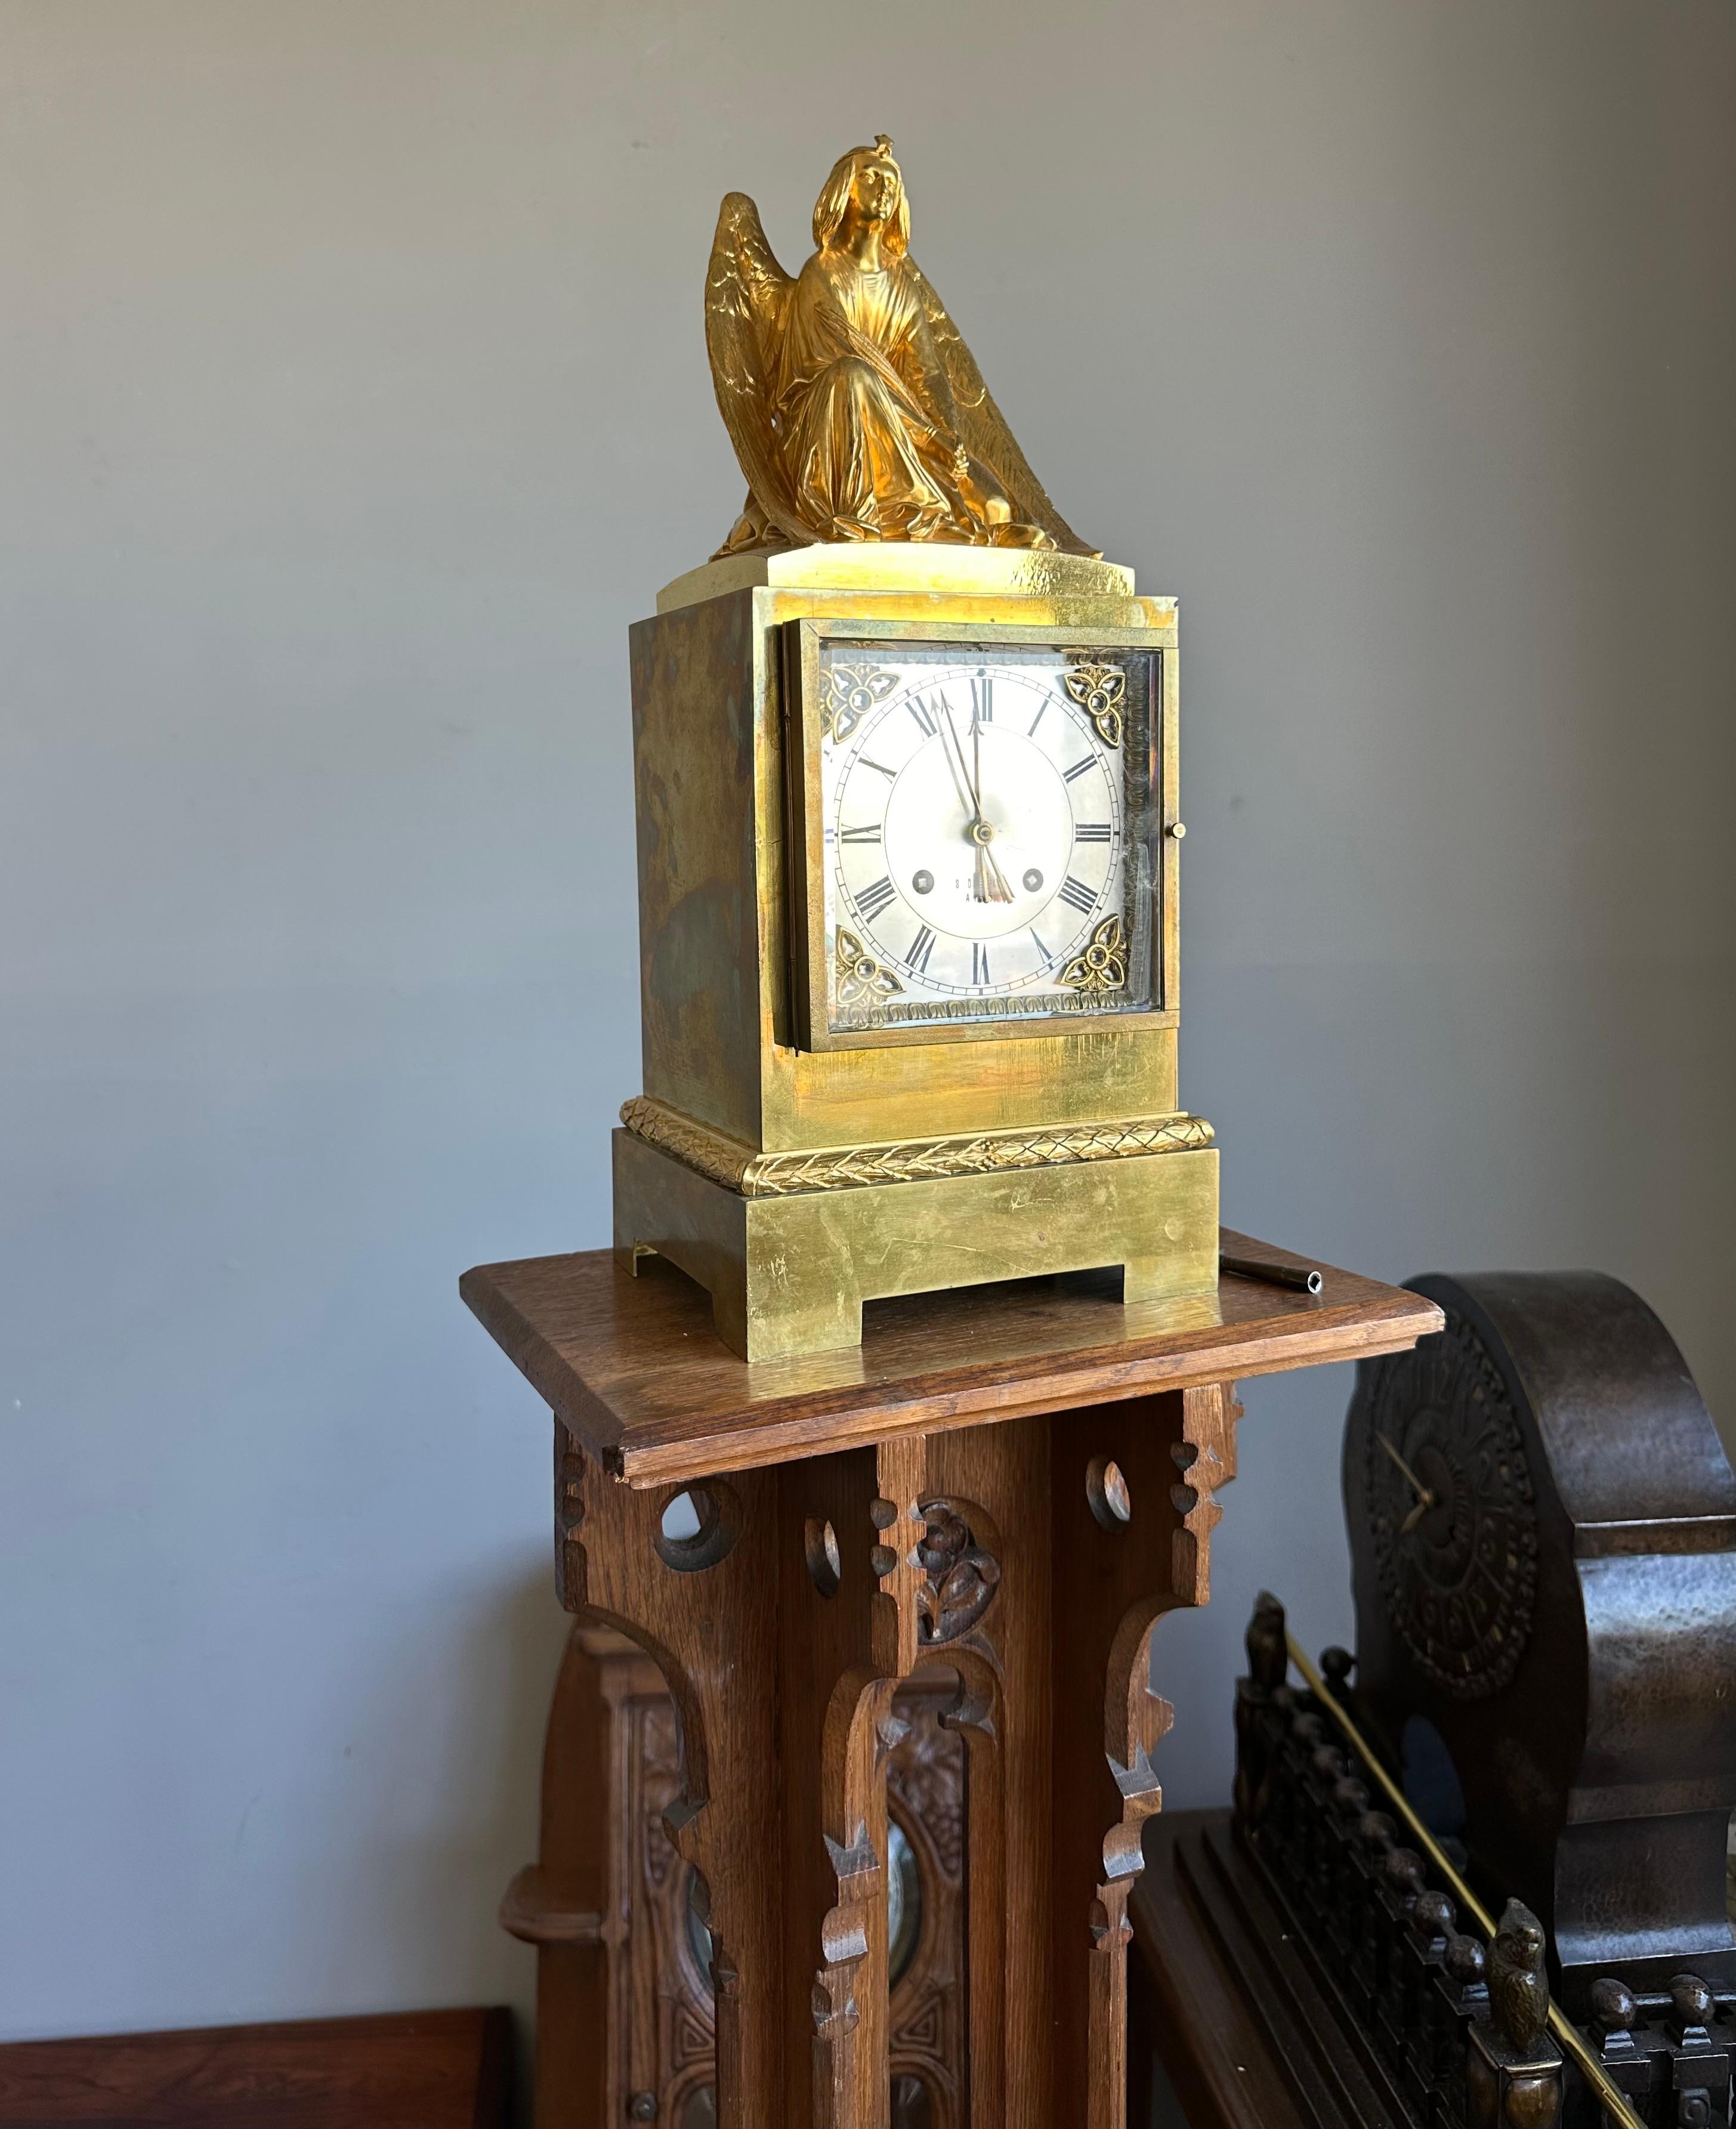 Seltene und wunderschöne antike Uhr aus den frühen 1800er Jahren.  Gezeichnet: S. Devaulx, Paris.

Eine beeindruckende, stilvolle und große antike Uhr wie diese, die Ihren Kaminsims oder Beistelltisch schmückt, wird das Aussehen und das Gefühl des